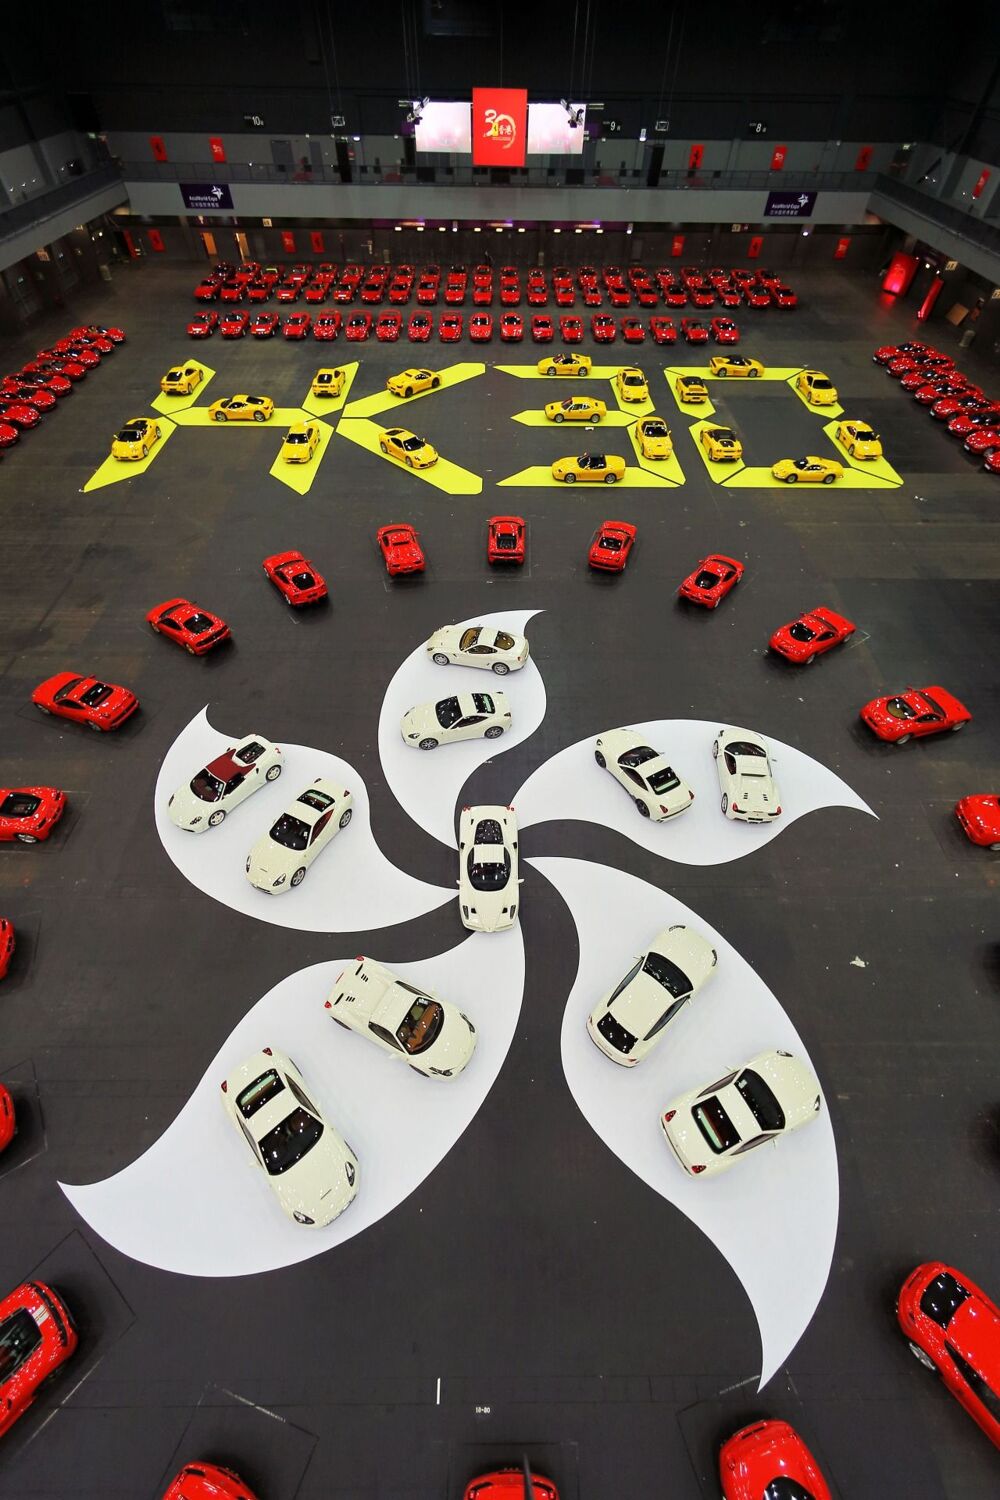 Ferrari отпраздновала 30 лет в Гонконге